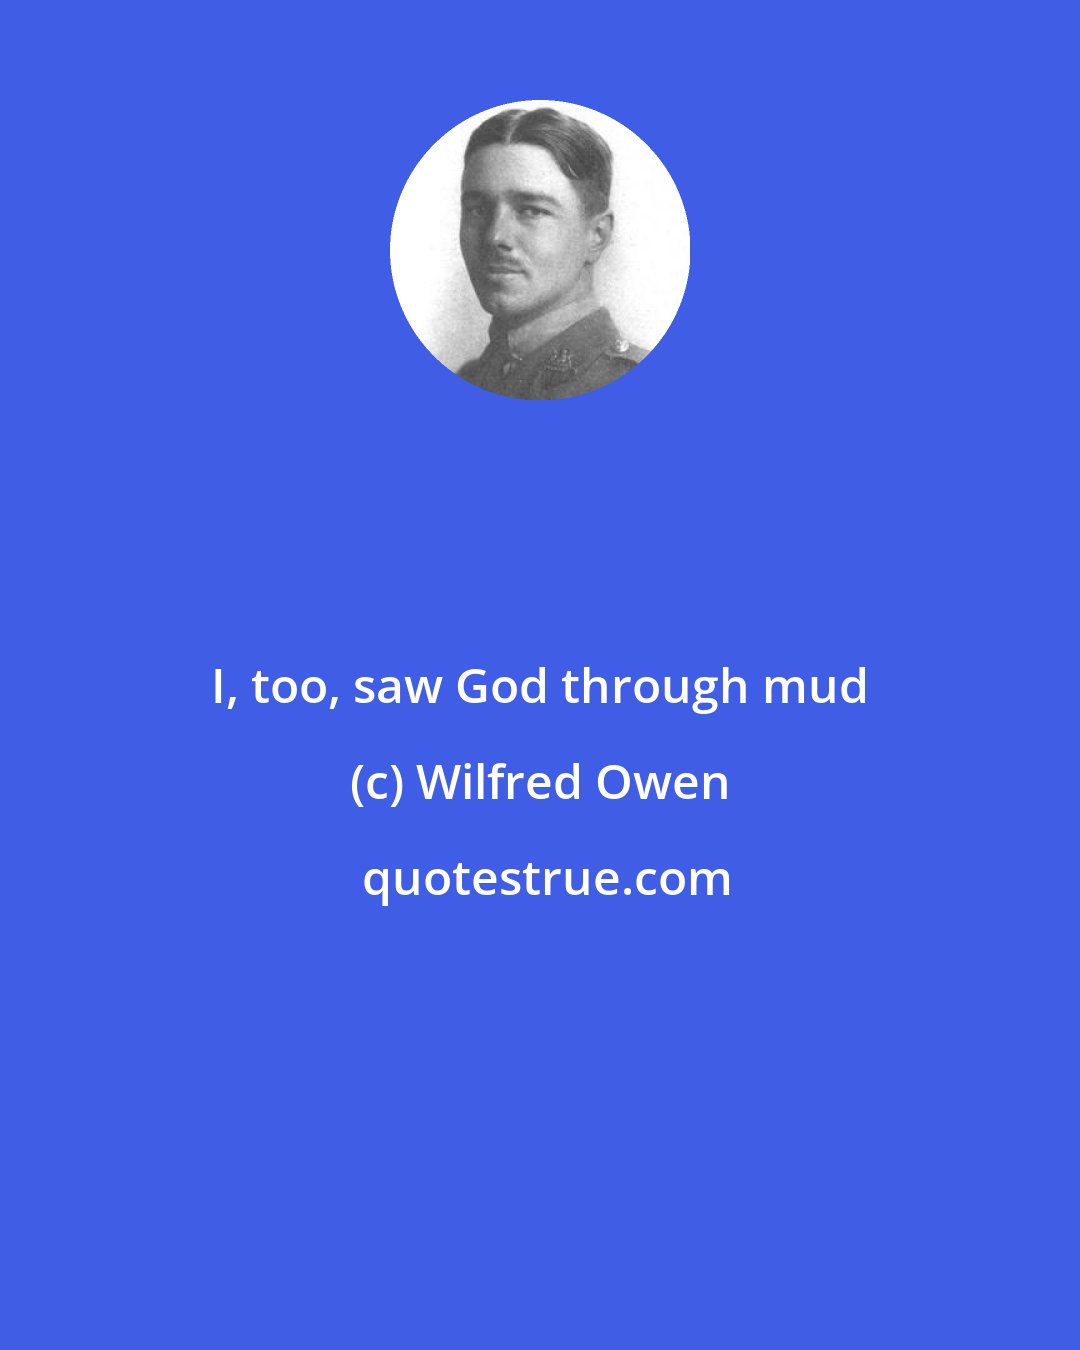 Wilfred Owen: I, too, saw God through mud